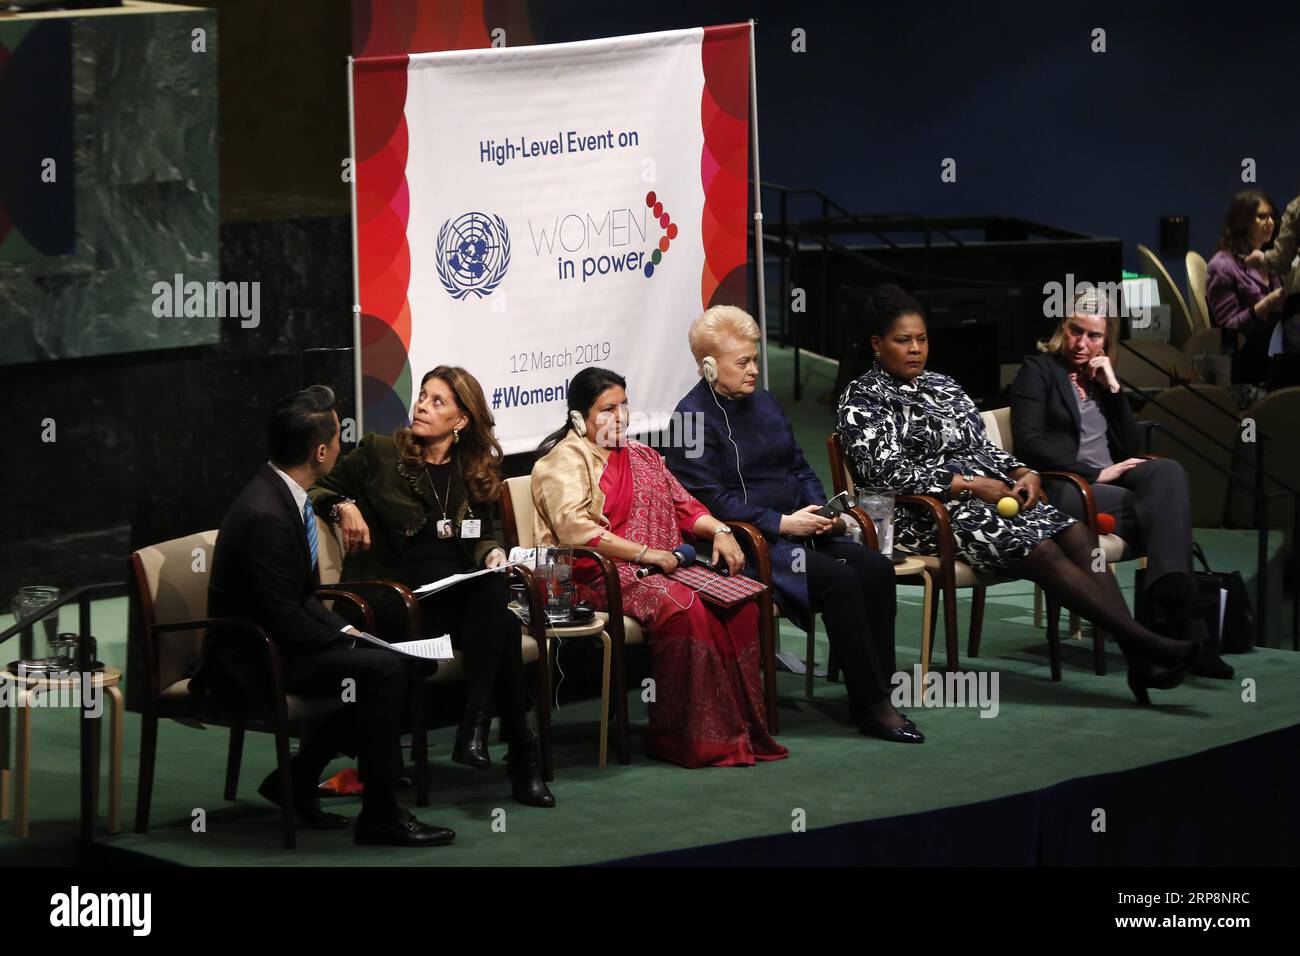 (190312) -- NATIONS UNIES, 12 mars 2019 -- la vice-présidente colombienne Marta Lucia Ramirez (2e L), la présidente népalaise Bidhya Devi Bhandari (3e L), la présidente lituanienne Dalia Grybauskaite (4e L), la présidente de Trinité-et-Tobago Paula-Mae Weekes (5e L) Federica Mogherini (6e L), haute représentante de l'UE pour les affaires étrangères et la politique de sécurité, assistent à une table ronde sur un événement de haut niveau sur les femmes au pouvoir au siège de l'ONU à New York, le 12 mars 2019. Maria Fernanda Espinosa Garces, présidente de l’Assemblée générale des Nations Unies, a accueilli l’événement de haut niveau sur les femmes au pouvoir à Tuesda Banque D'Images